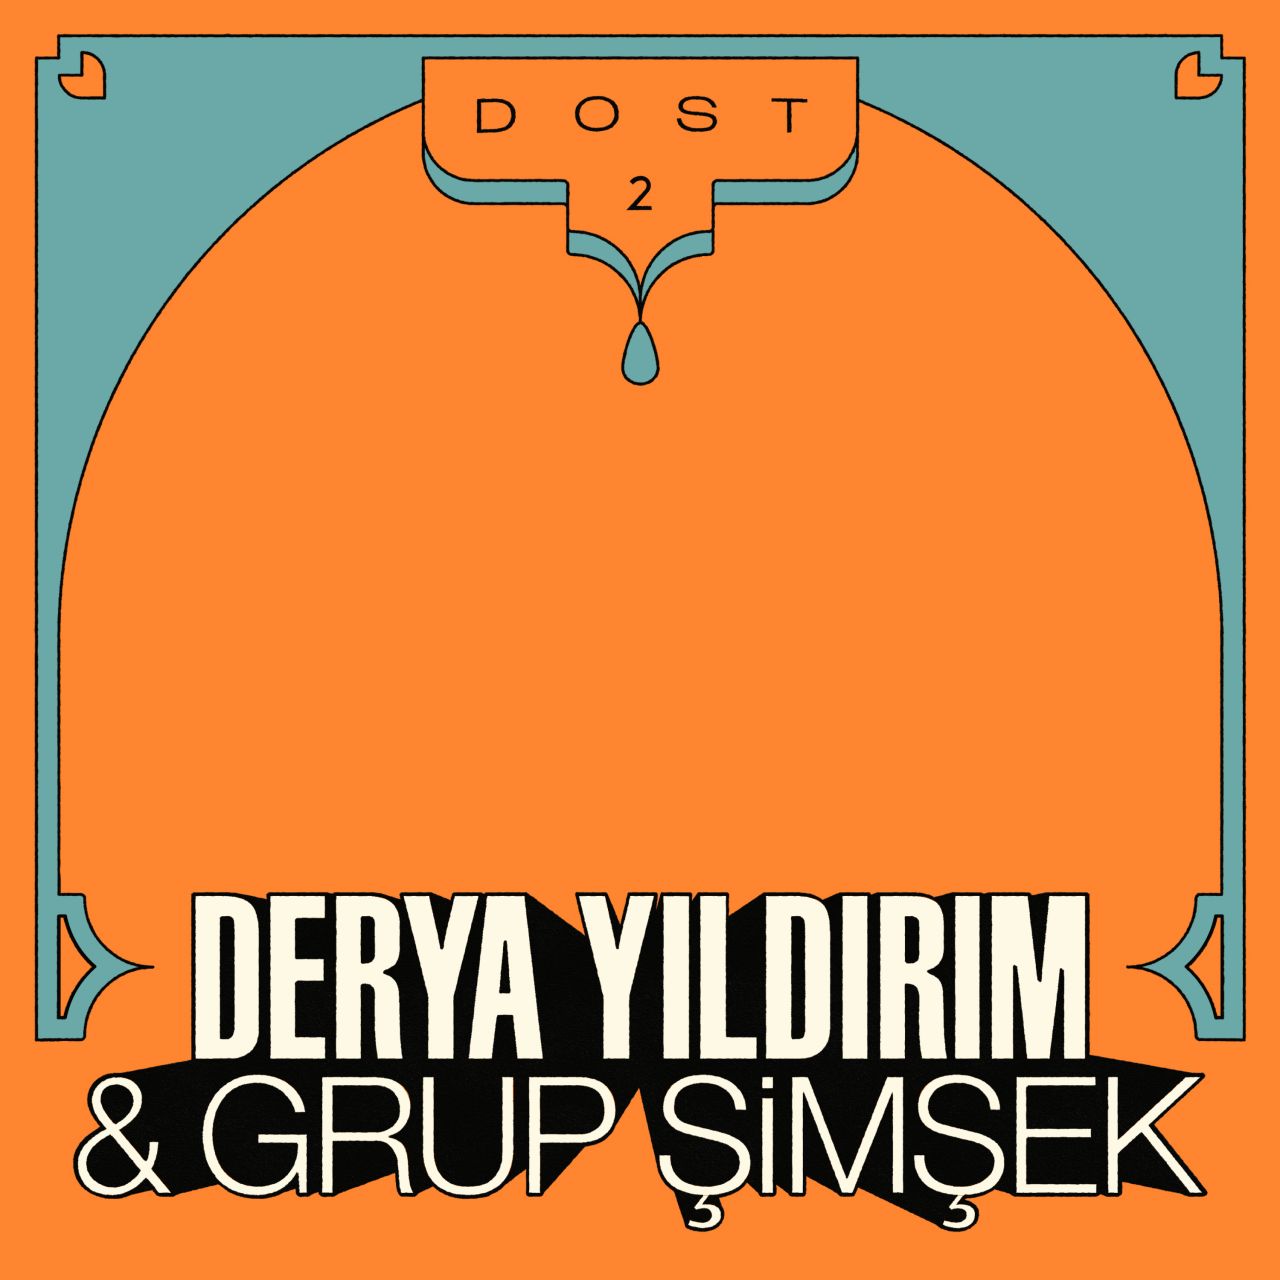 Derya Yıldırım & Grup Şimşek - Dost 2 - LP